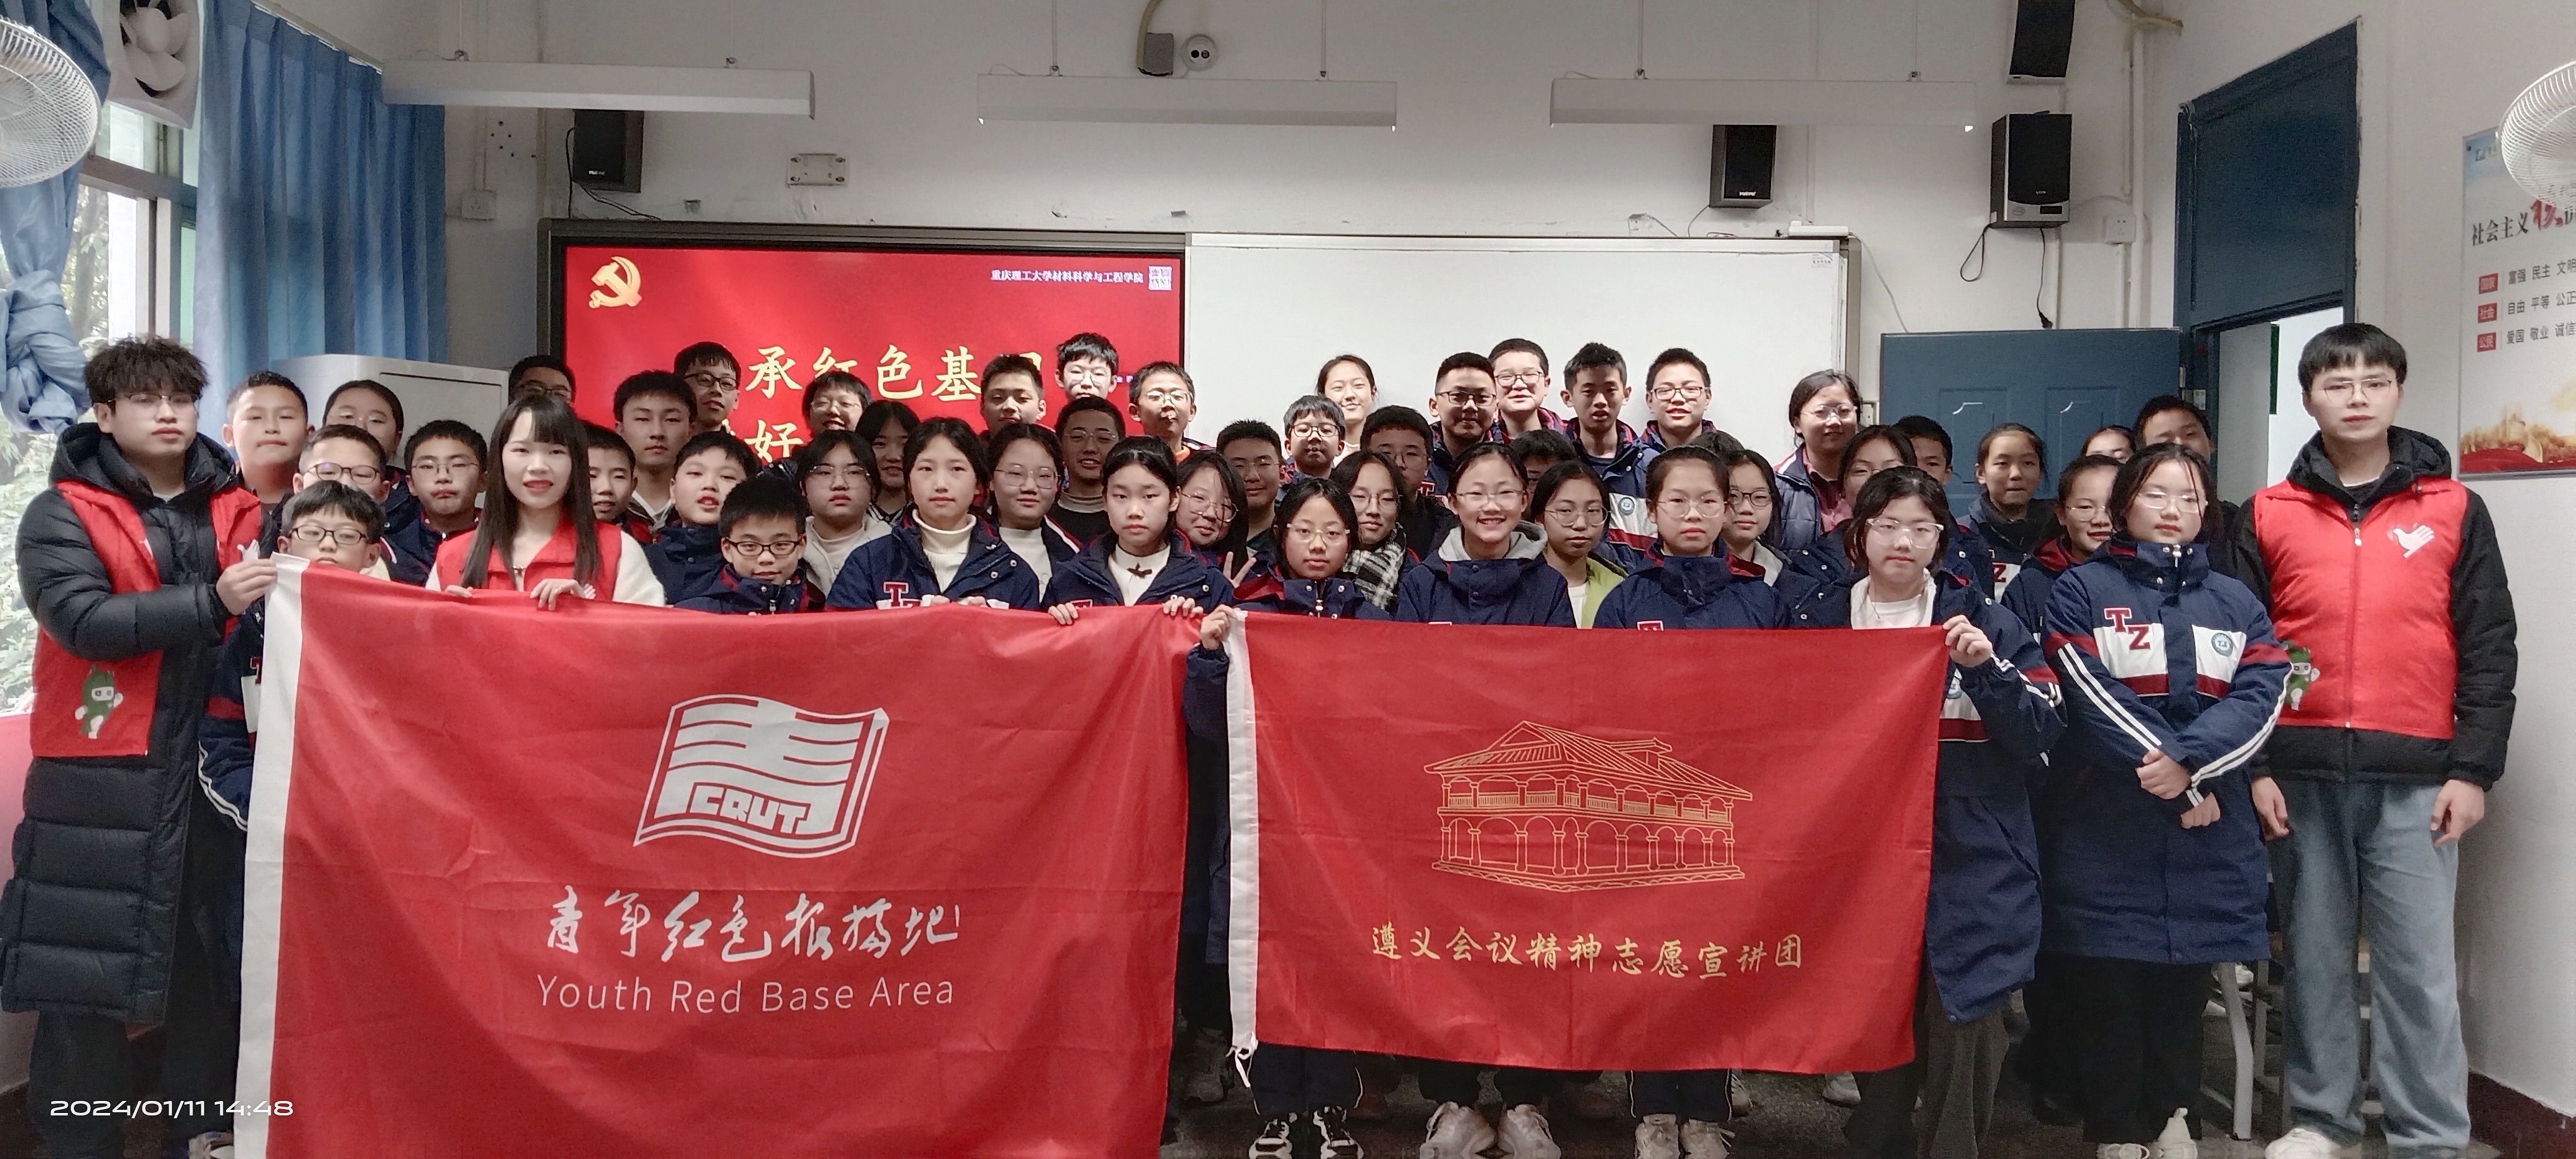 重庆理工大学“青年红色根据地”宣讲团走进中学开展“同上一堂思政课”活动